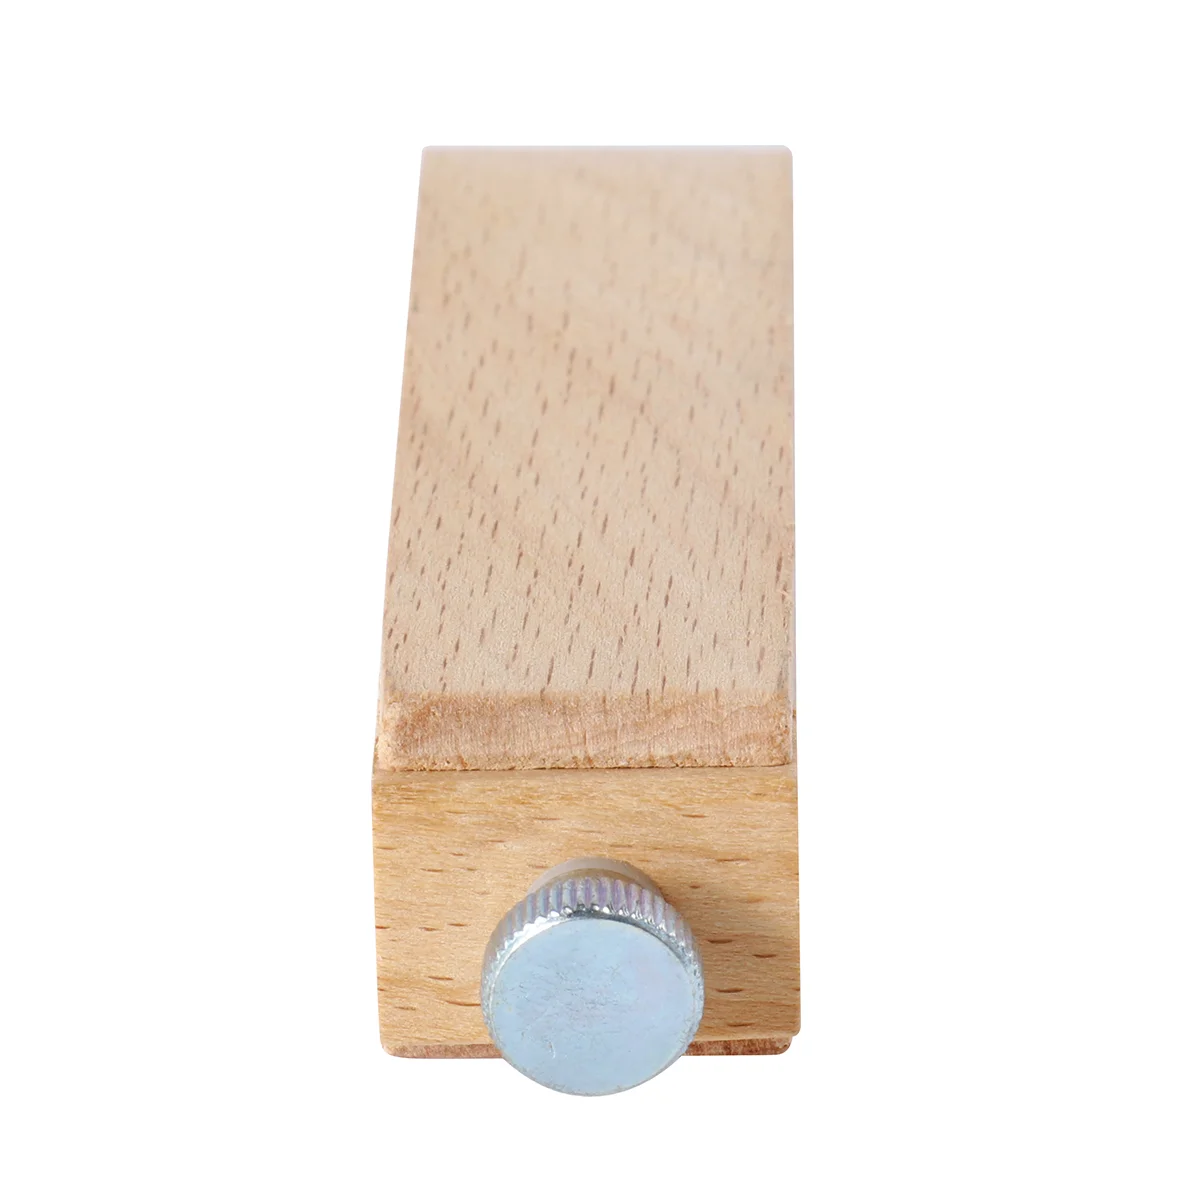 

Wooden Sand Paper Retaining Block Sanding Block Sandpaper Accessories Wooden Sandpaper Retainer Sandpaper Sanding